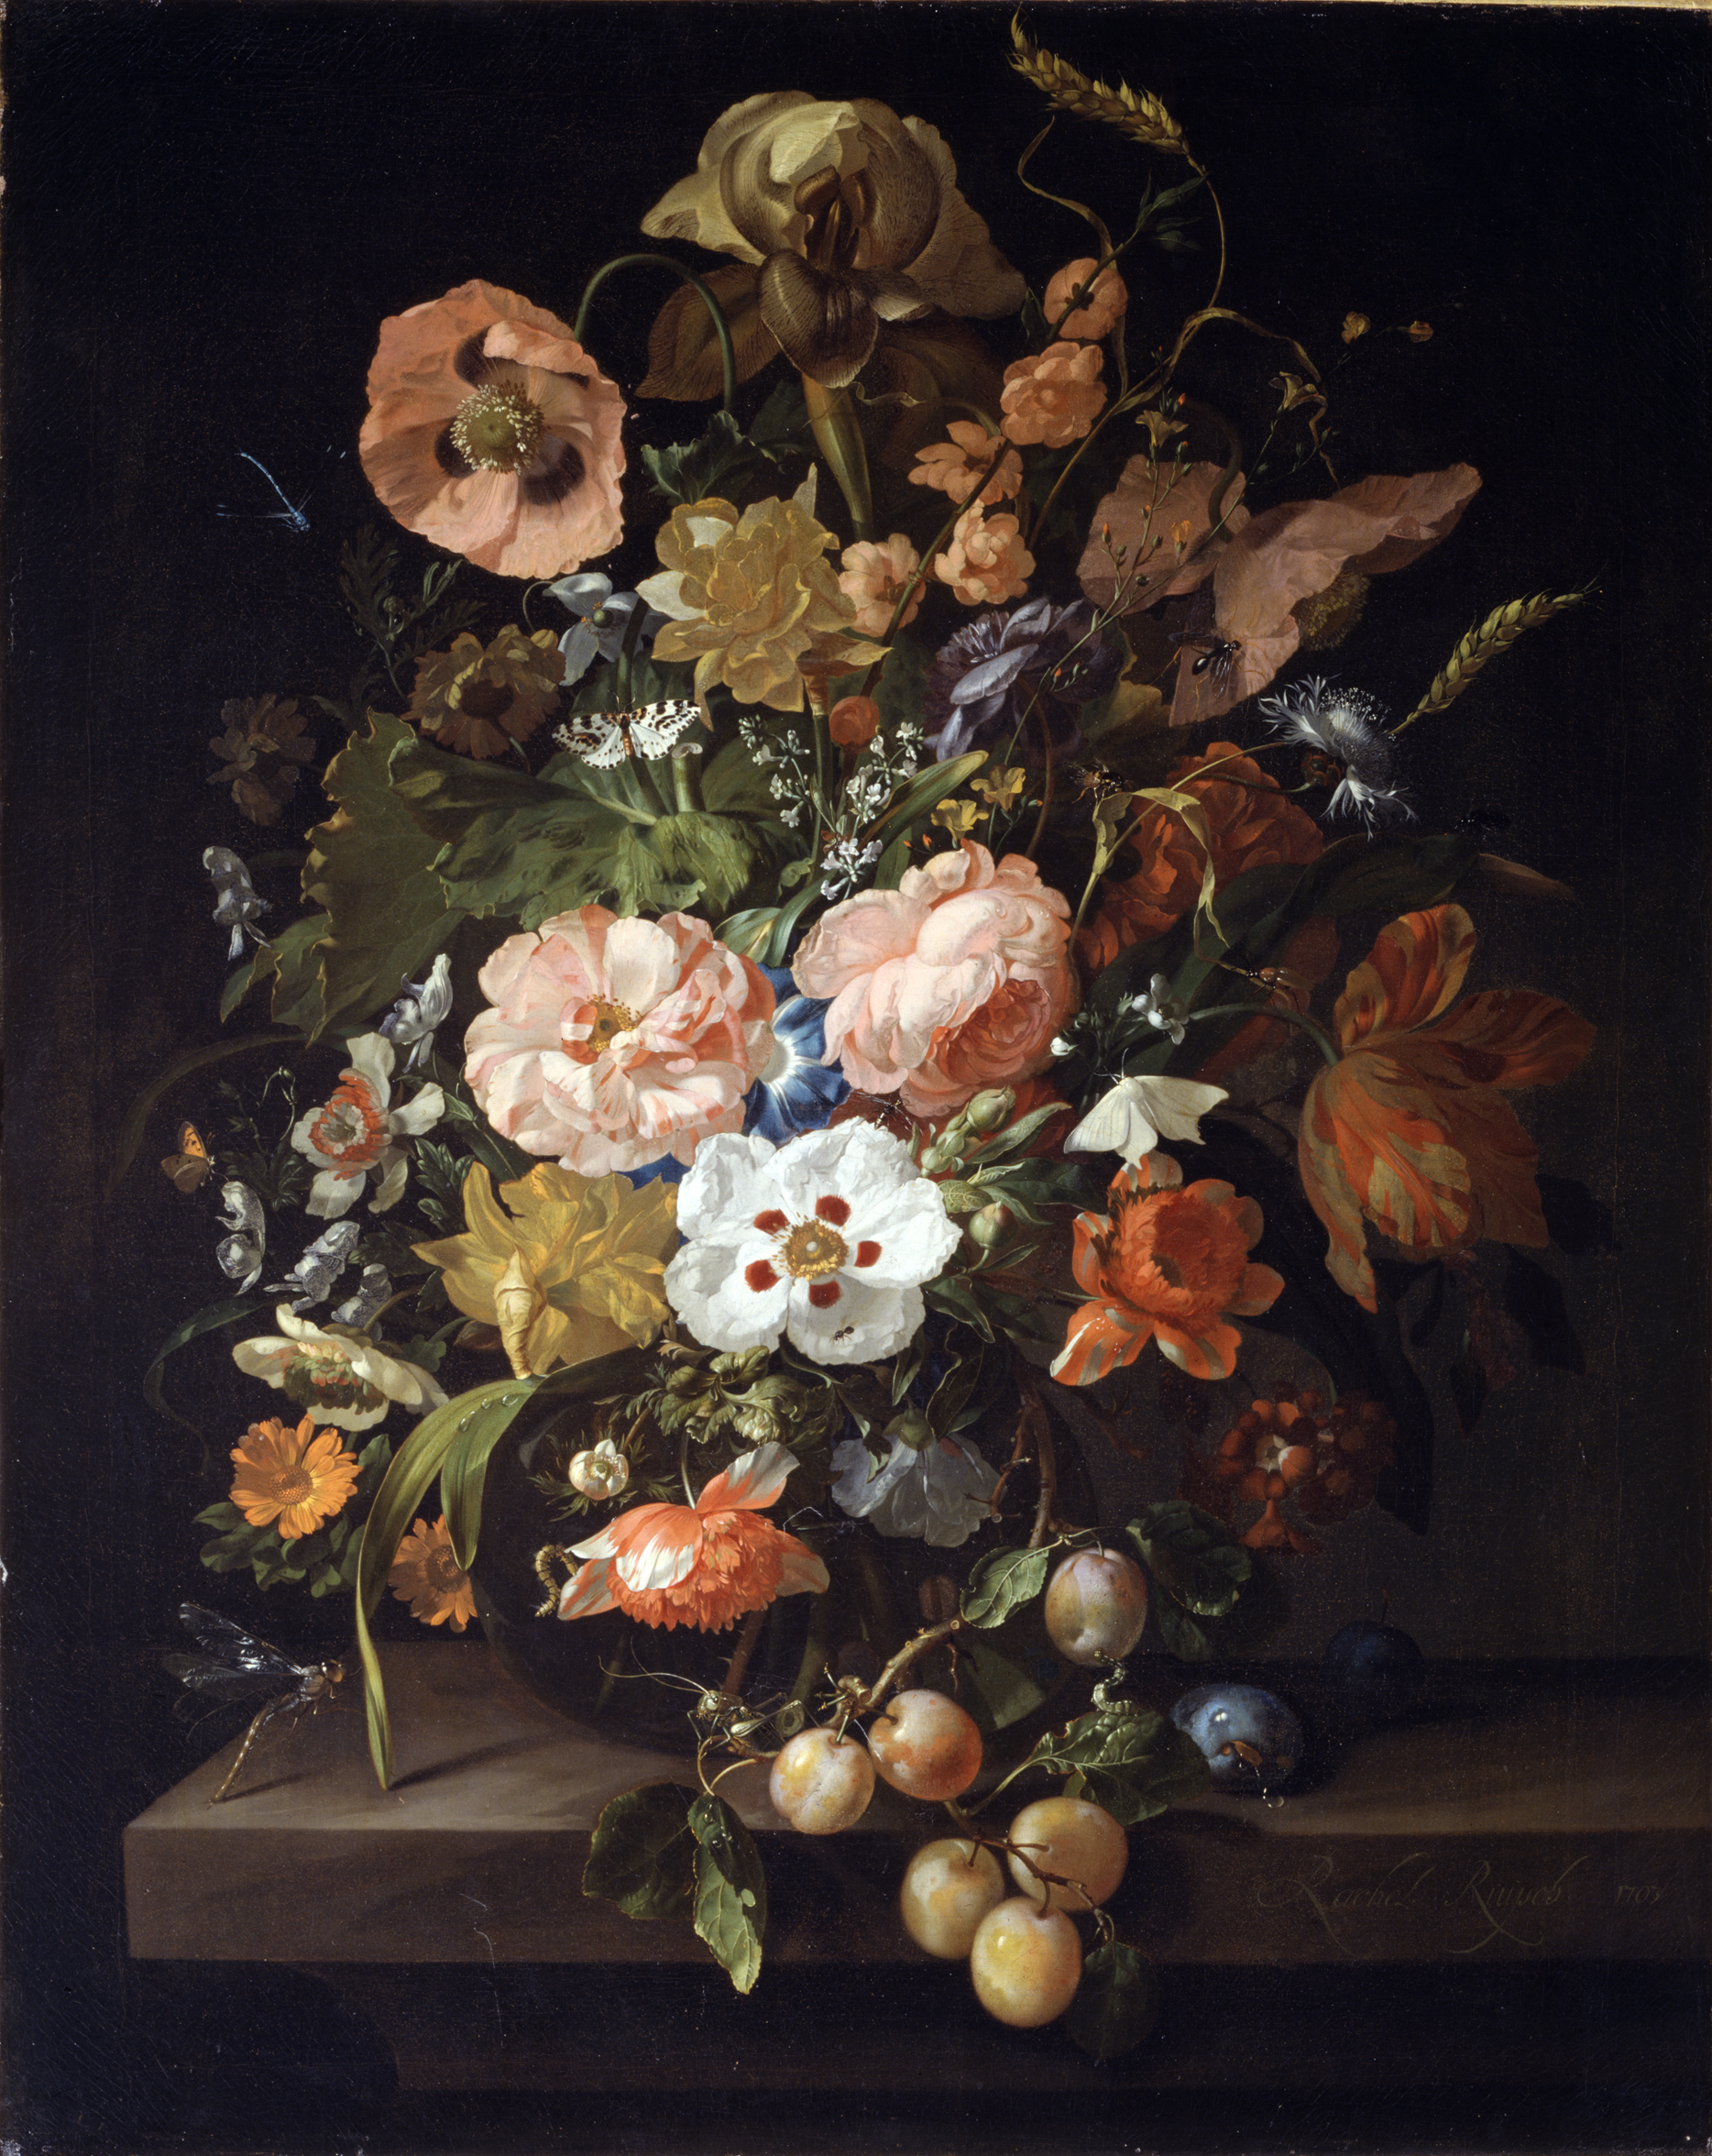 Zátiší s květinami a ovocem by Rachel Ruysch - 1703 